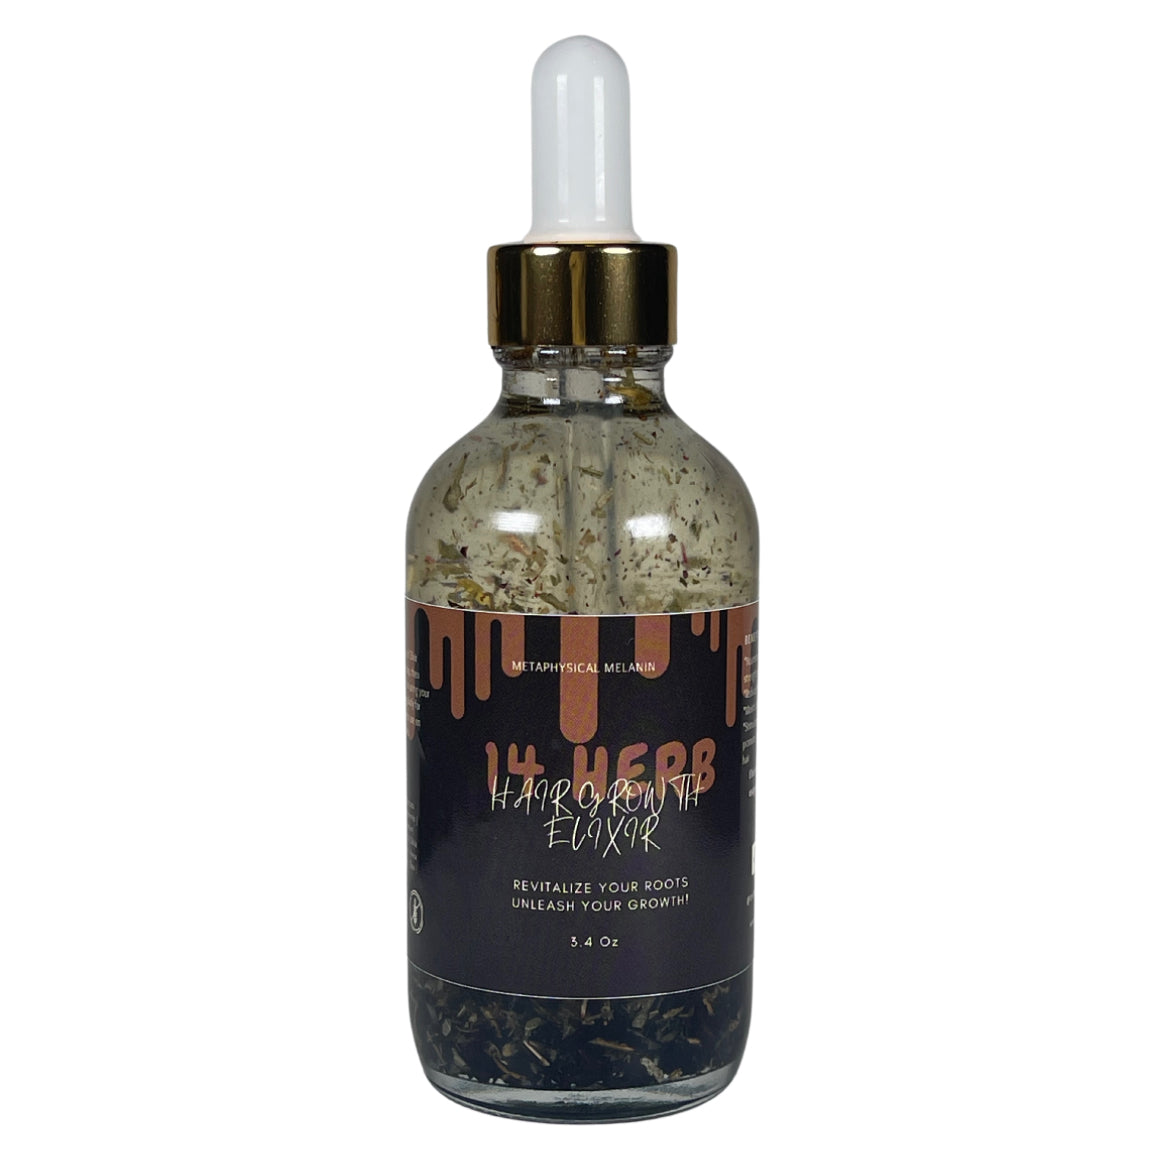 14 Herb Hair Growth Elixir